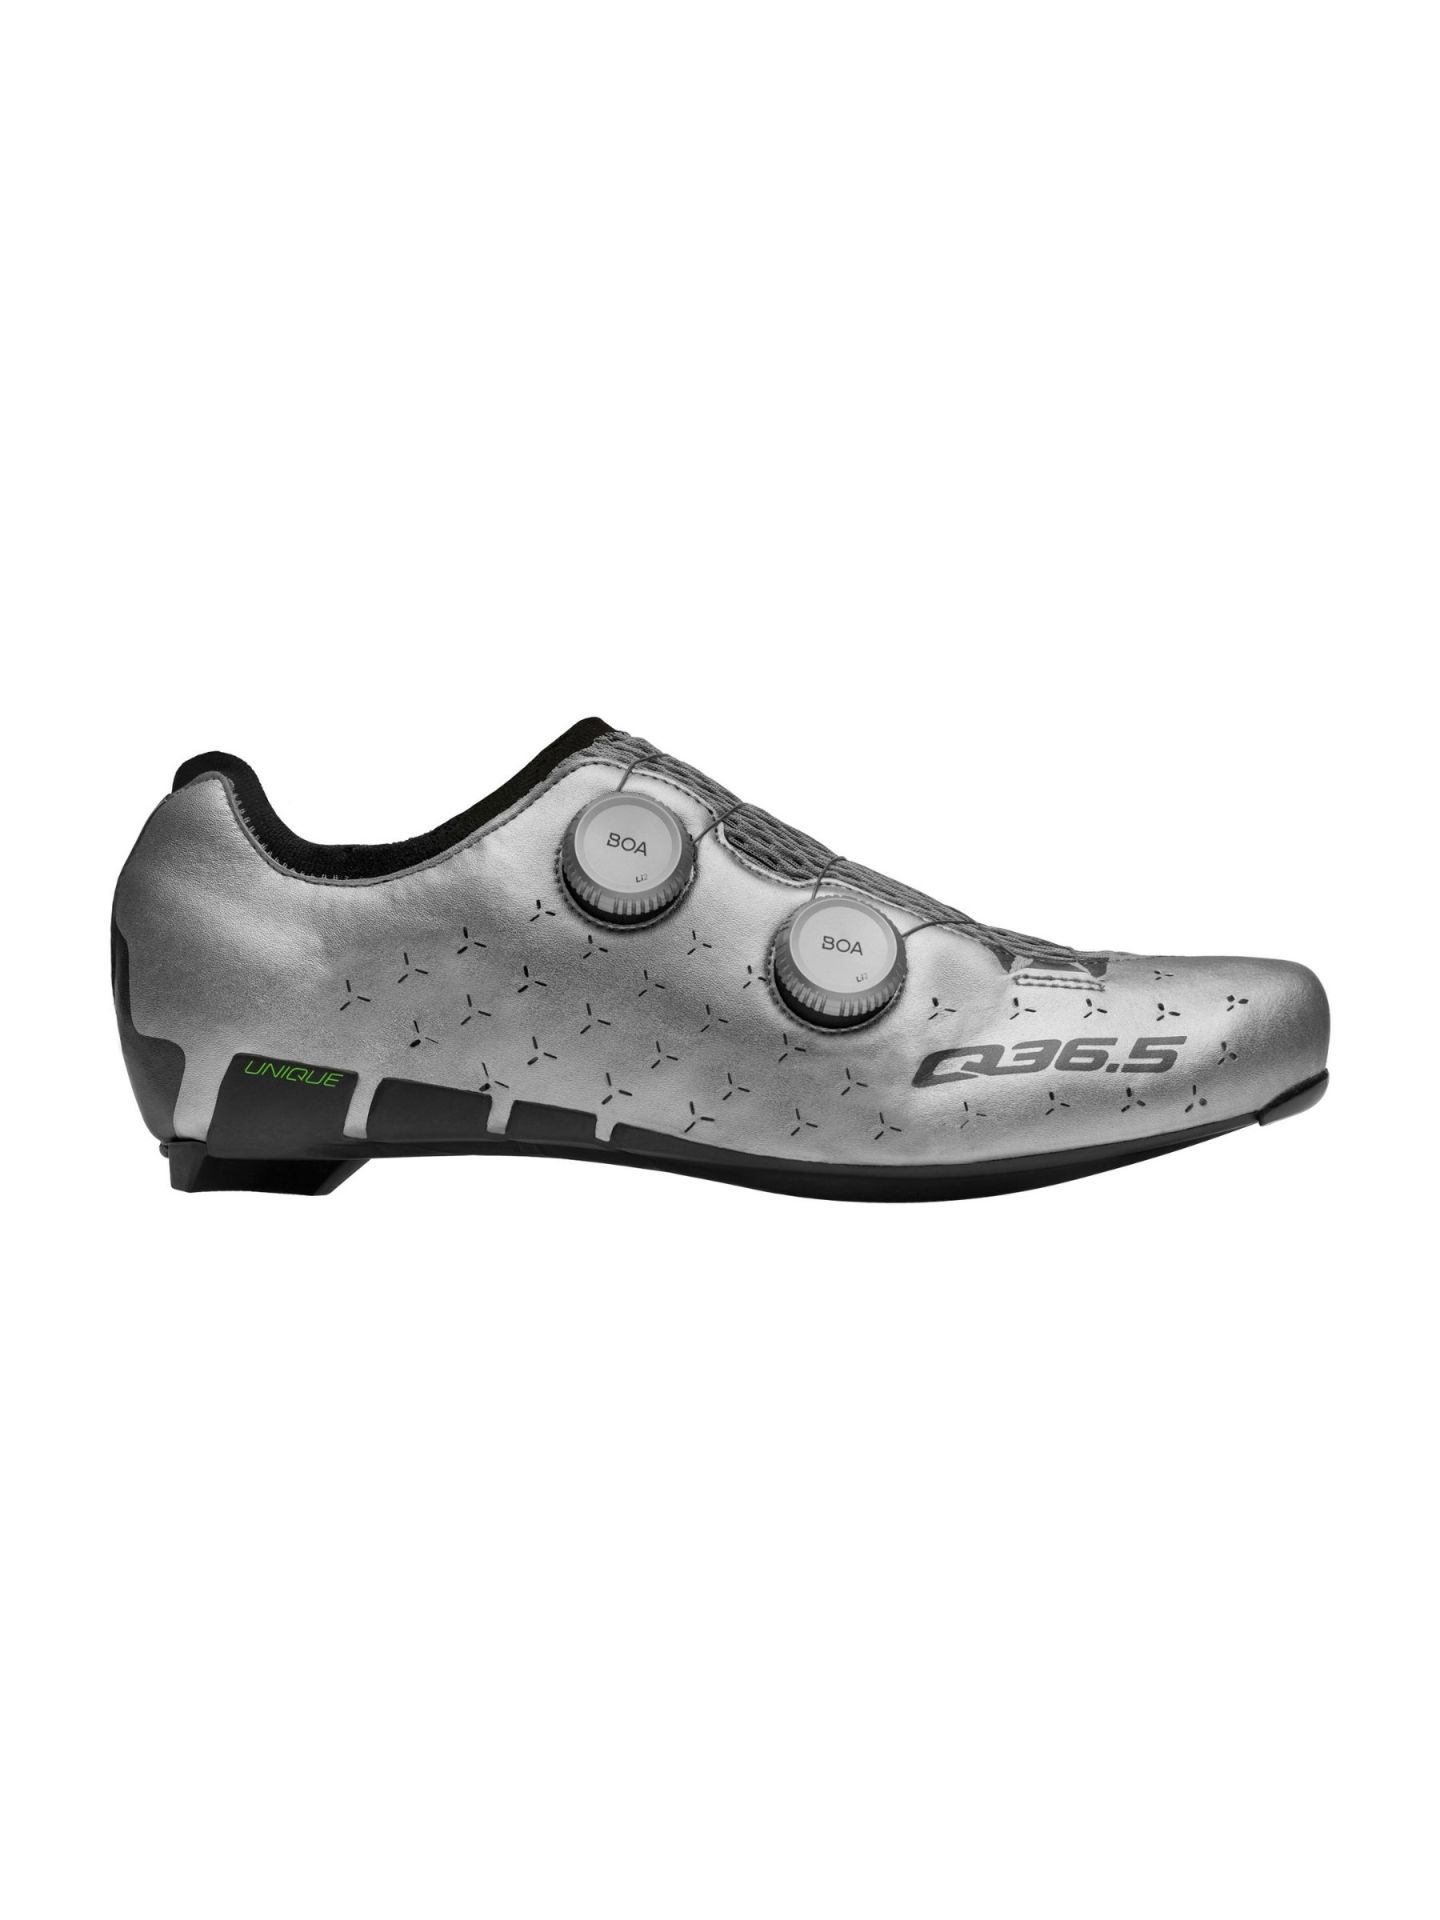 Cycling Unique Shoes Road Silver • Q36.5